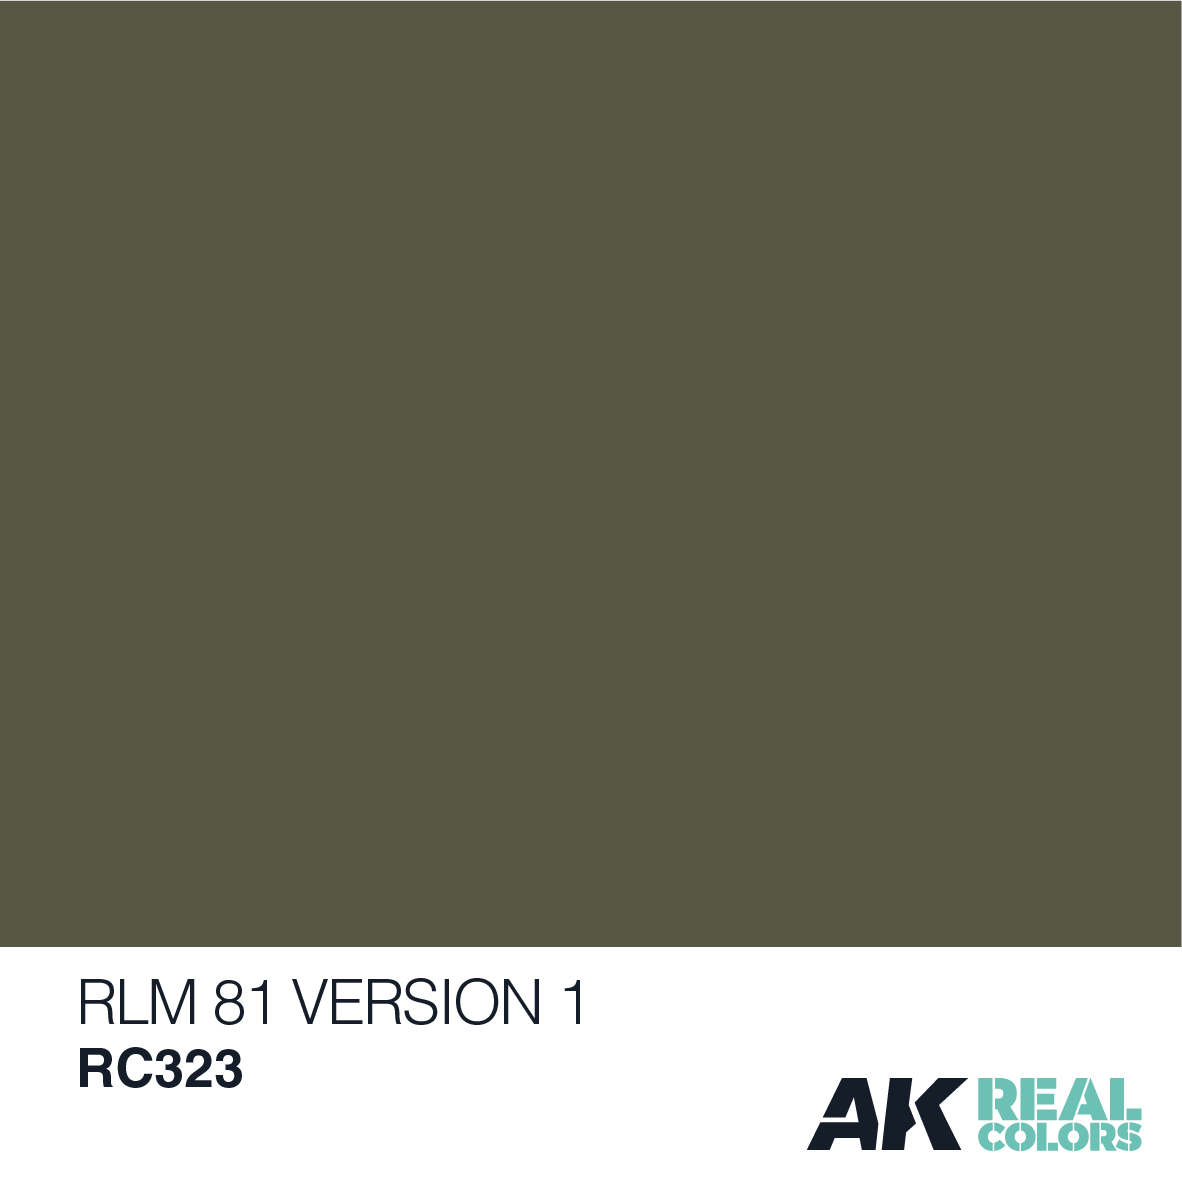 RLM 81 Version 1